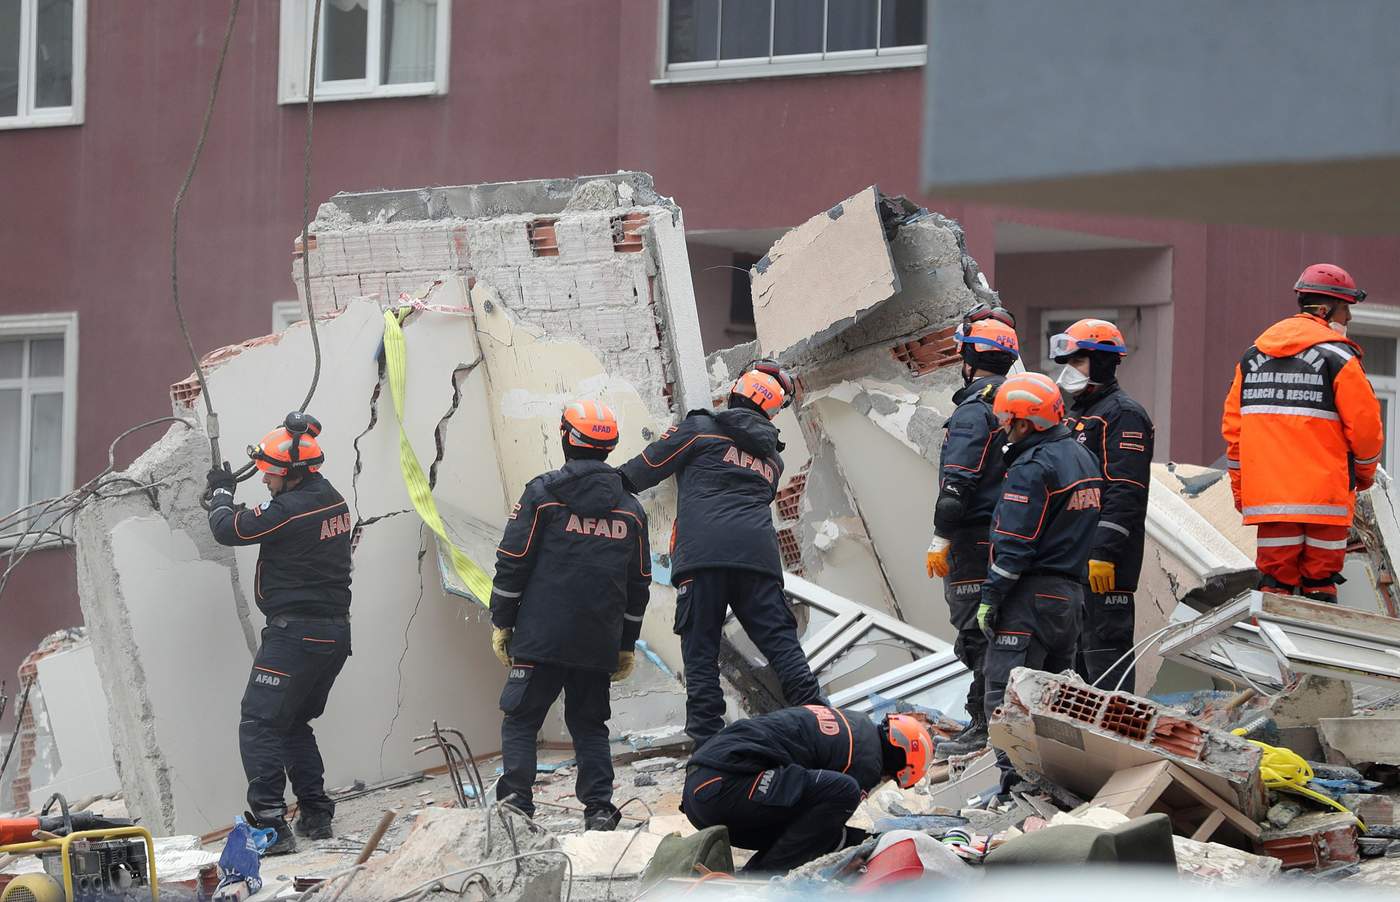 Mientras las labores de rescate continúan, las autoridades han evacuado otros siete edificios de la zona, tras detectar riesgos de derrumbe. (EFE)